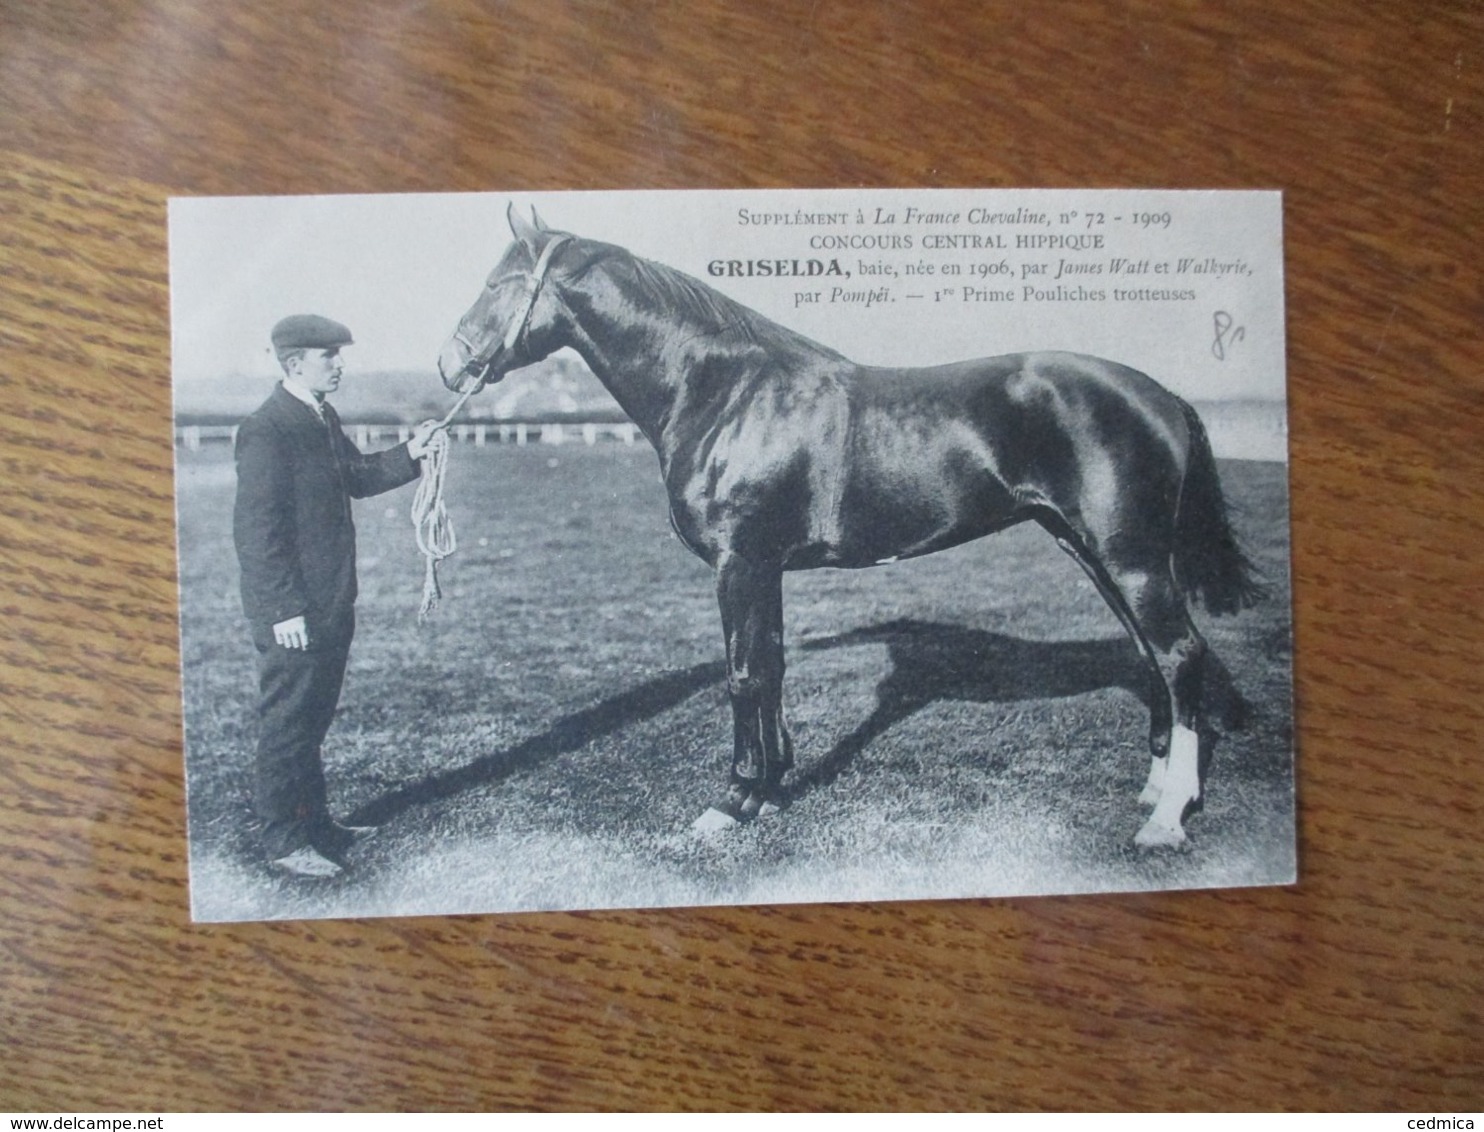 GRISELDA,BAIE,NEE EN 1906, PAR JAMES WATT ET WALKYRIE ,PAR POMPEÏ,1re PRIME, SUPPLEMENT A LA FRANCE CHEVALINE N° 72-1909 - Horses